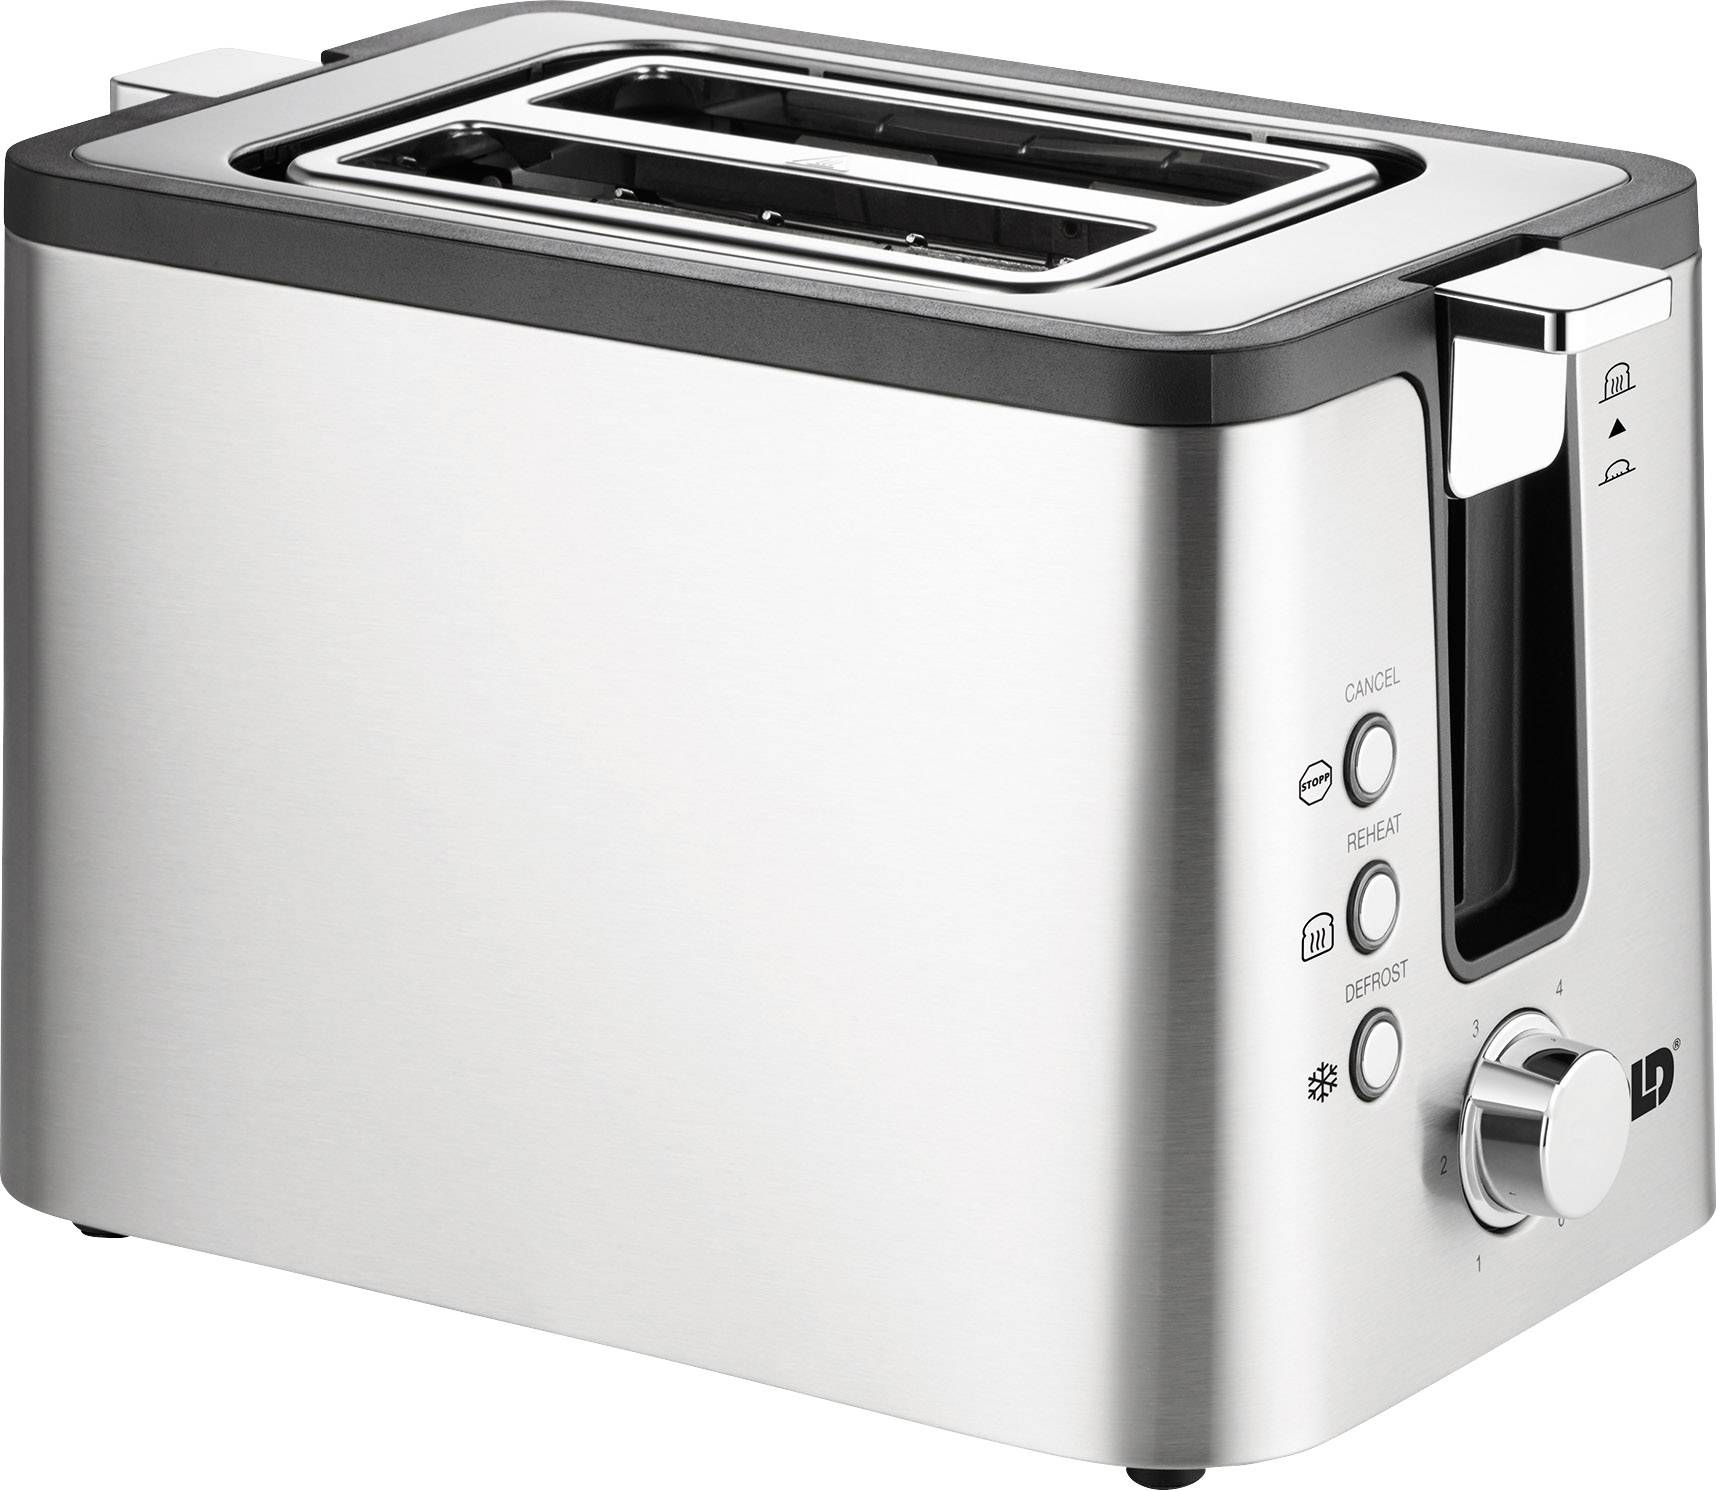 UNOLD TOASTER 2er Kompakt Toaster mit eingebautem Brötchenaufsatz Edelstahl